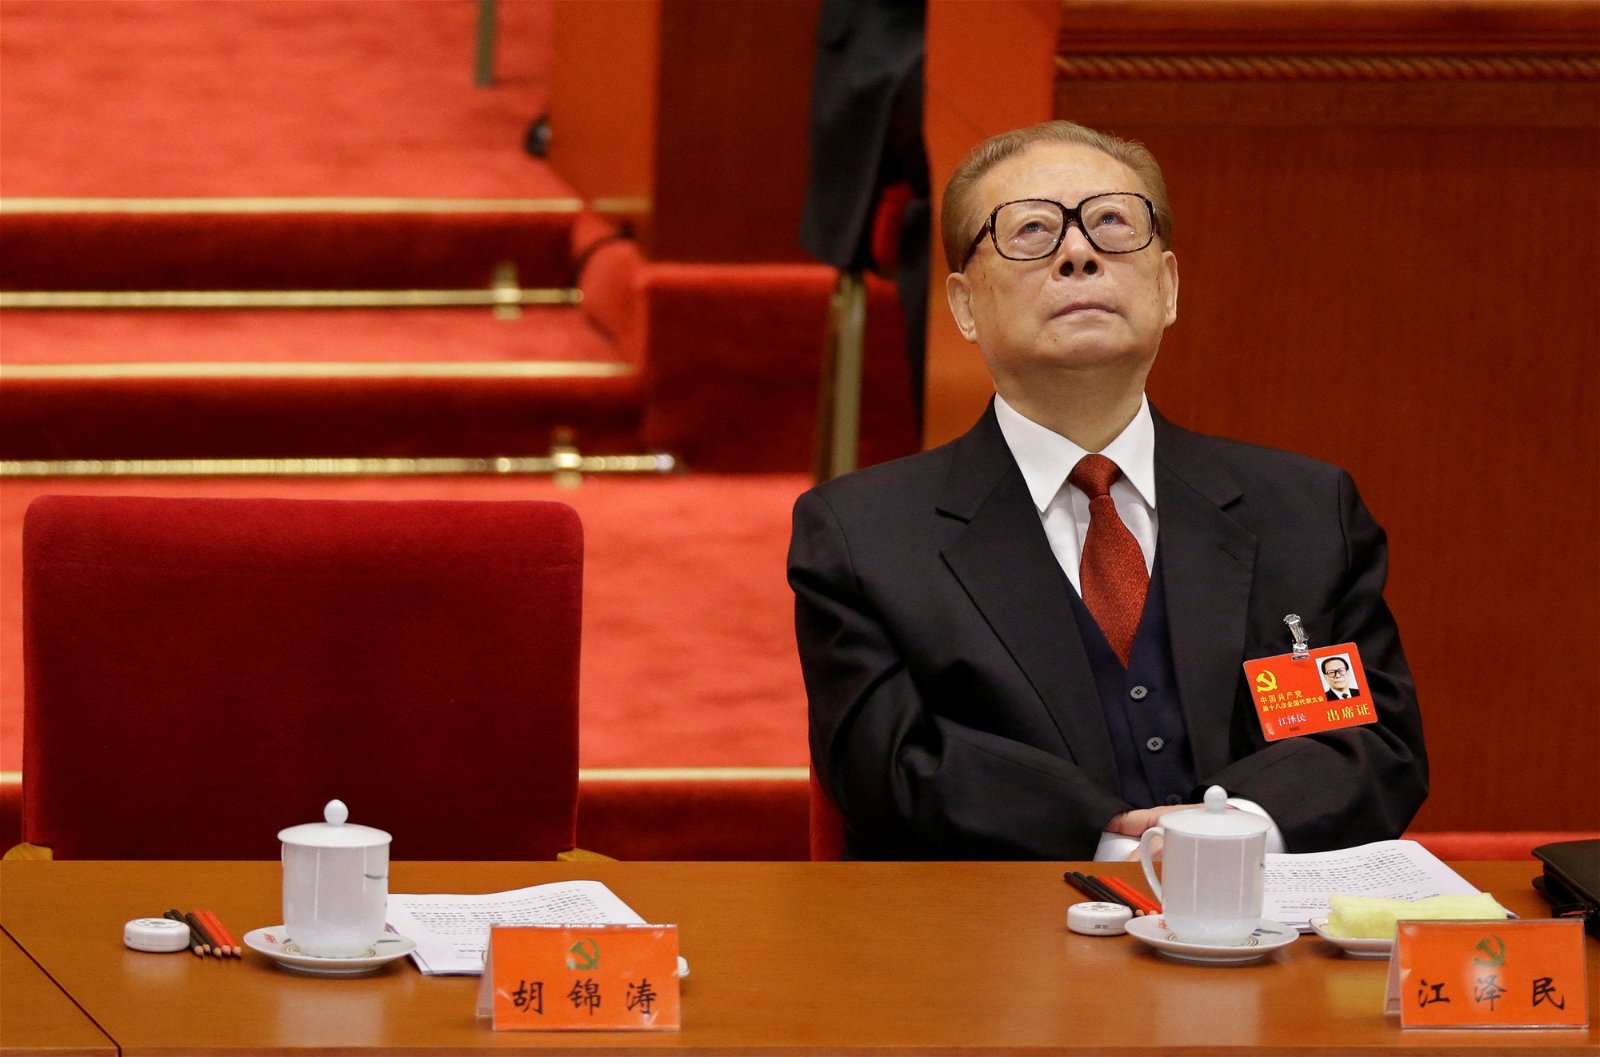 2012年11月8日在中共十八大会议上，时任中共总书记胡锦涛发表讲话期间，江泽民微微抬头往上看。（路透社档案照）